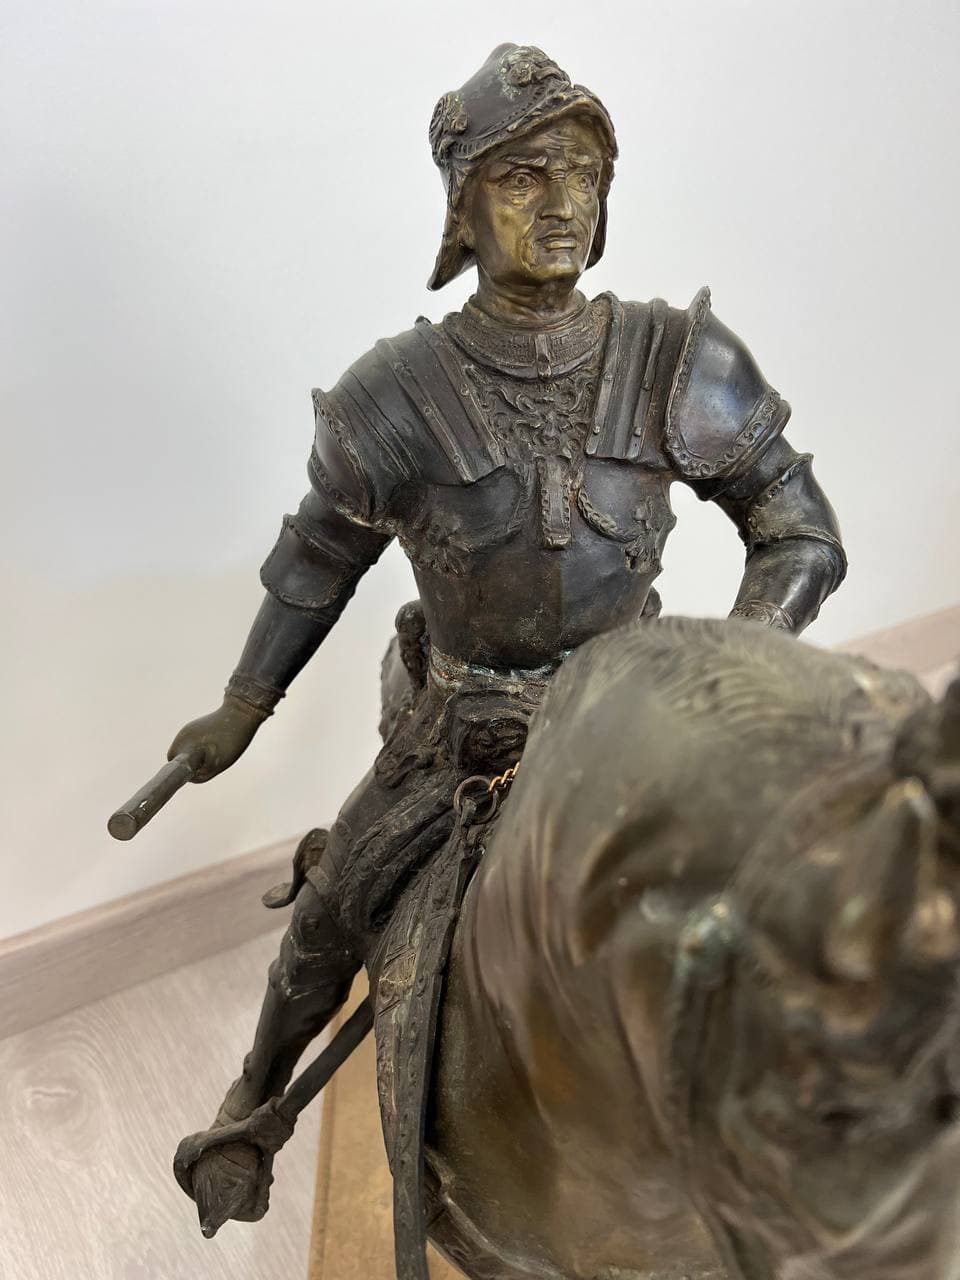 Антикварные конные статуи на мраморном пьедестале